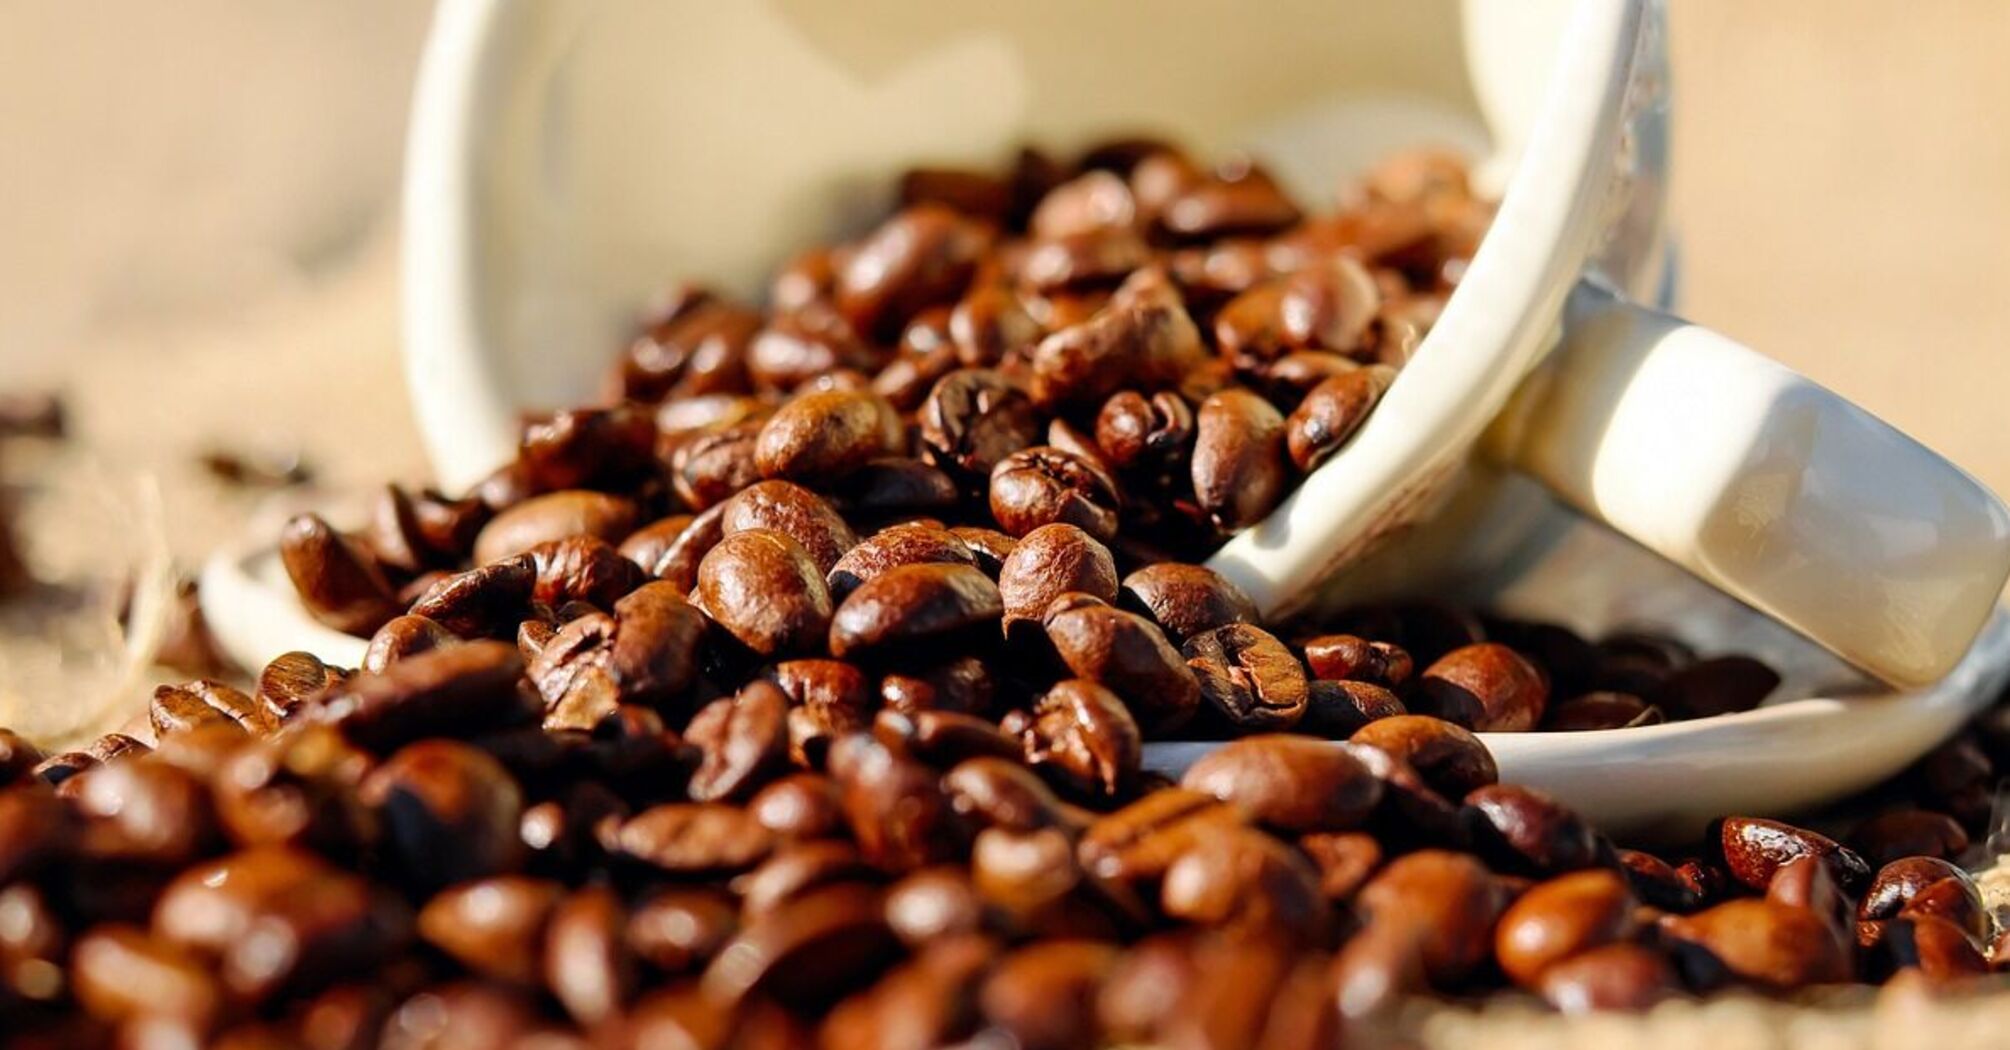 Як подрібнити зерна кави, якщо під рукою нема кавомолки